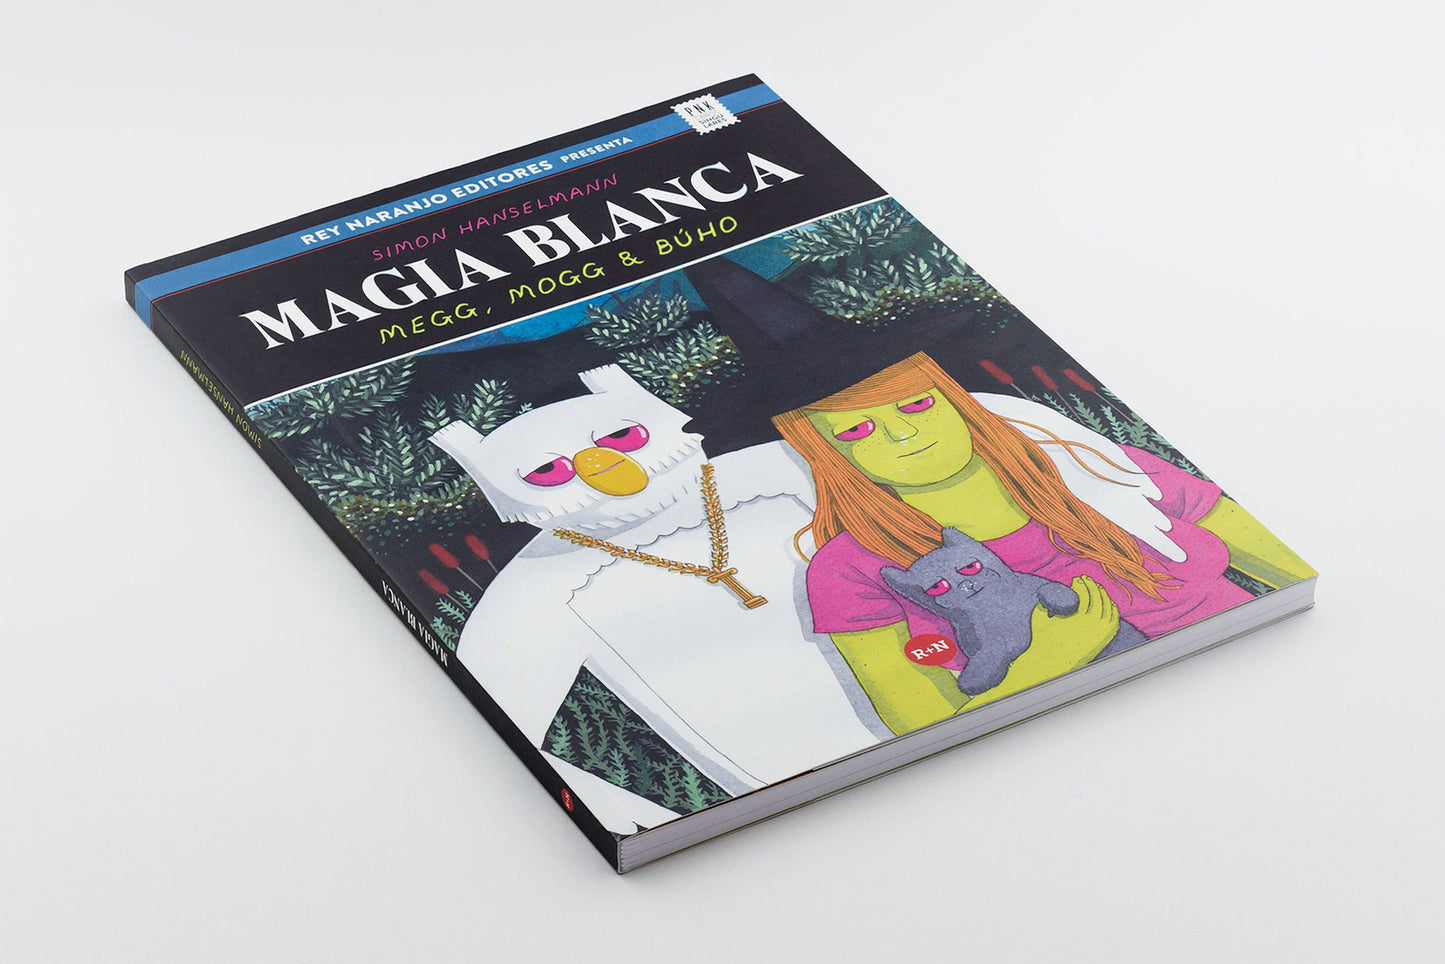 Magia Blanca: Megg, Mogg y Búho (lectores 16 años +)